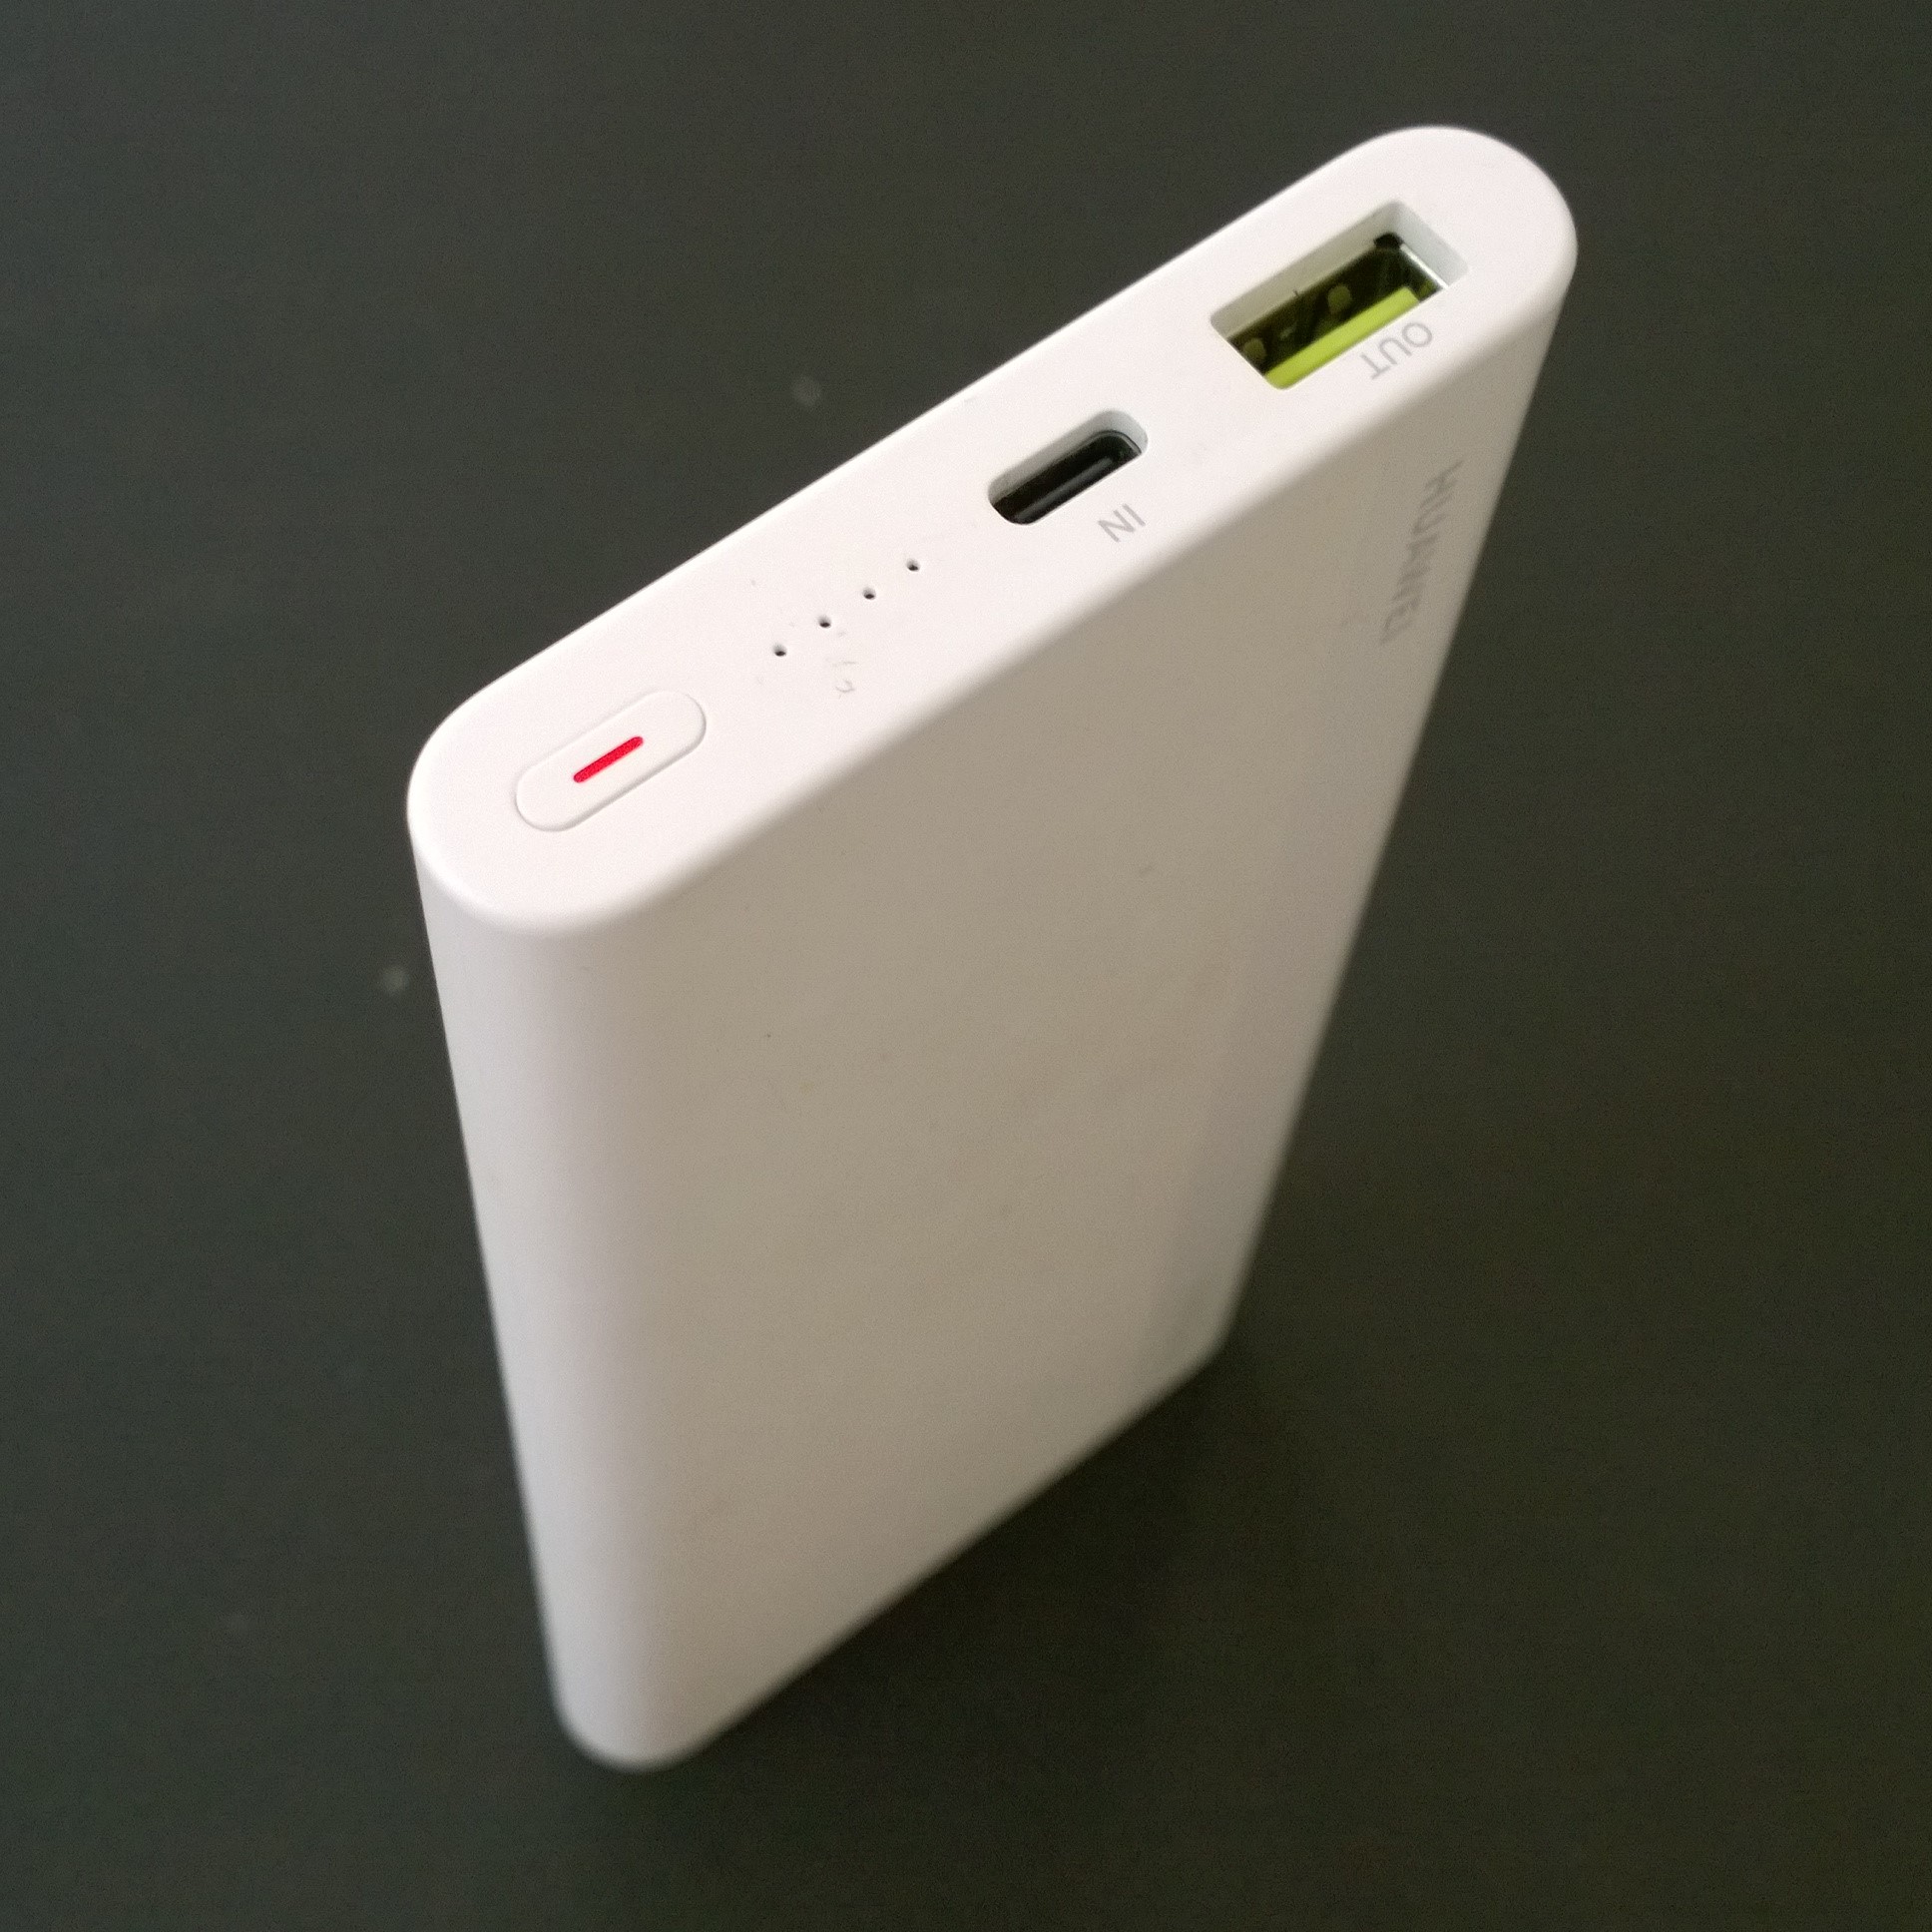 Trên tay đồ rẻ: Pin sạc dự phòng có sạc nhanh 2 chiều Huawei CP11QC